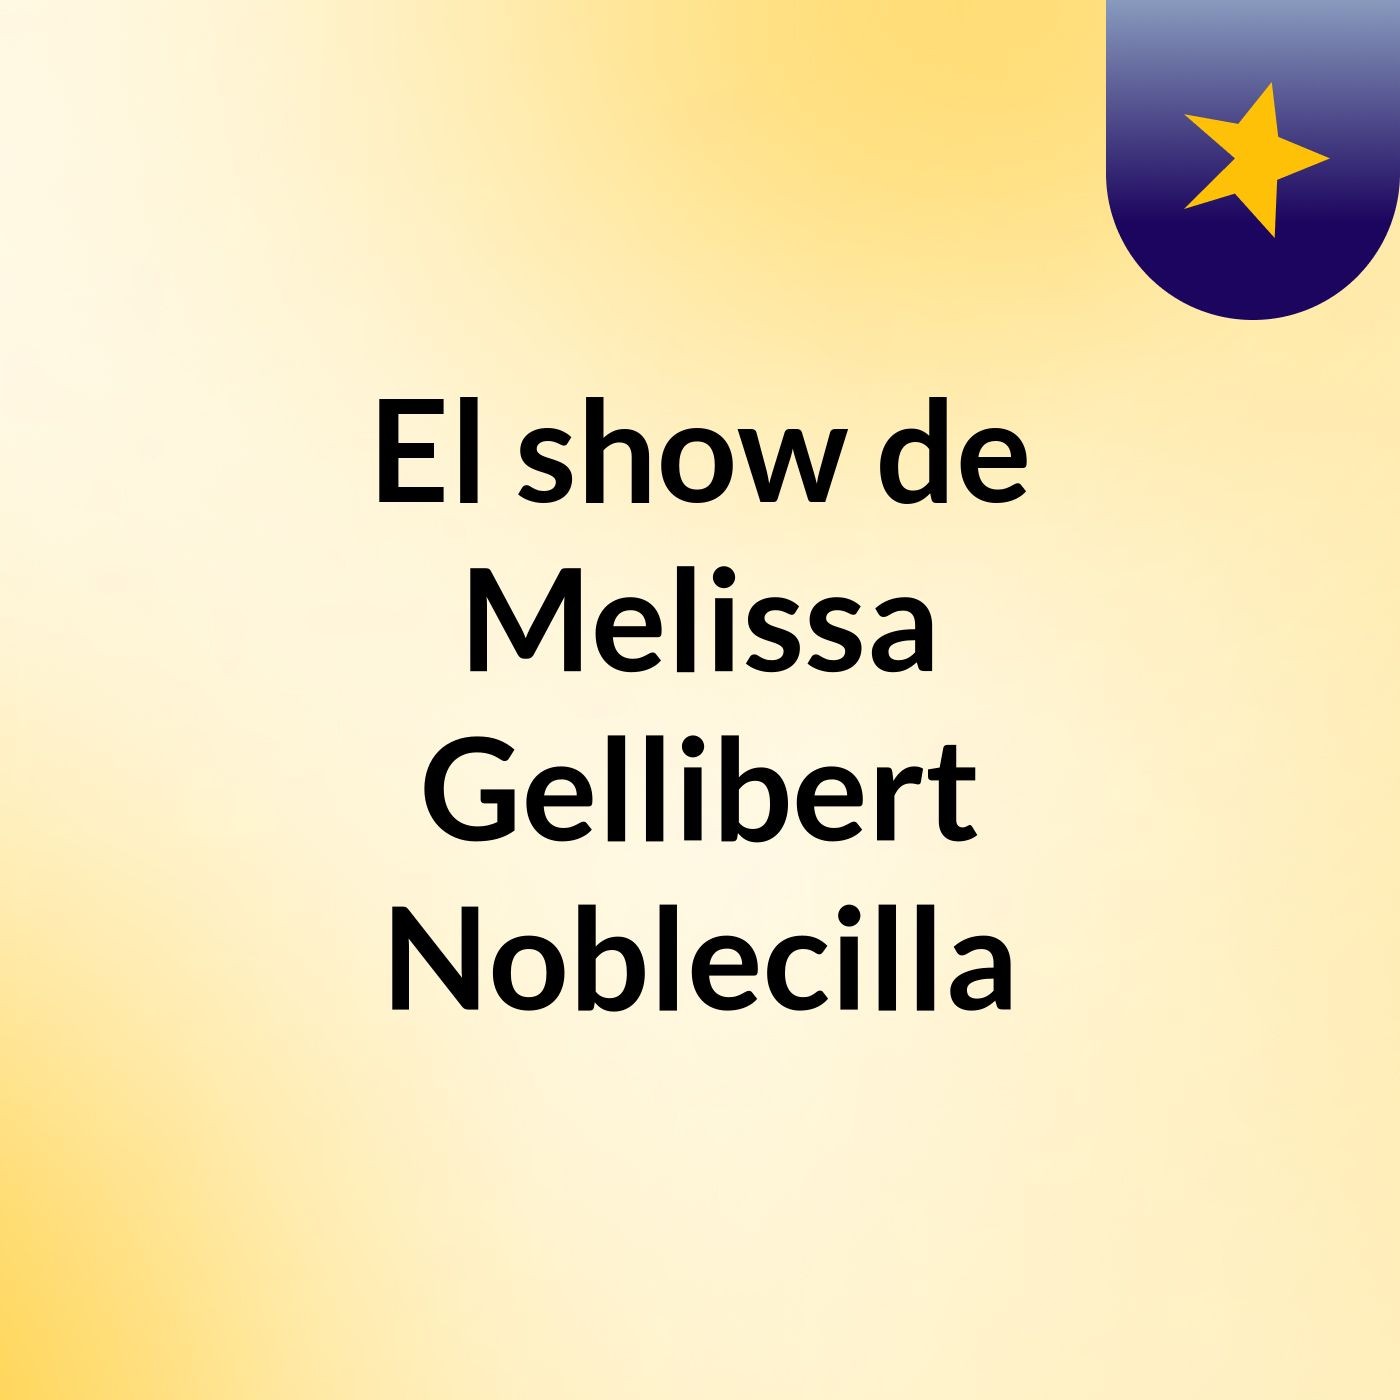 El show de Melissa Gellibert Noblecilla